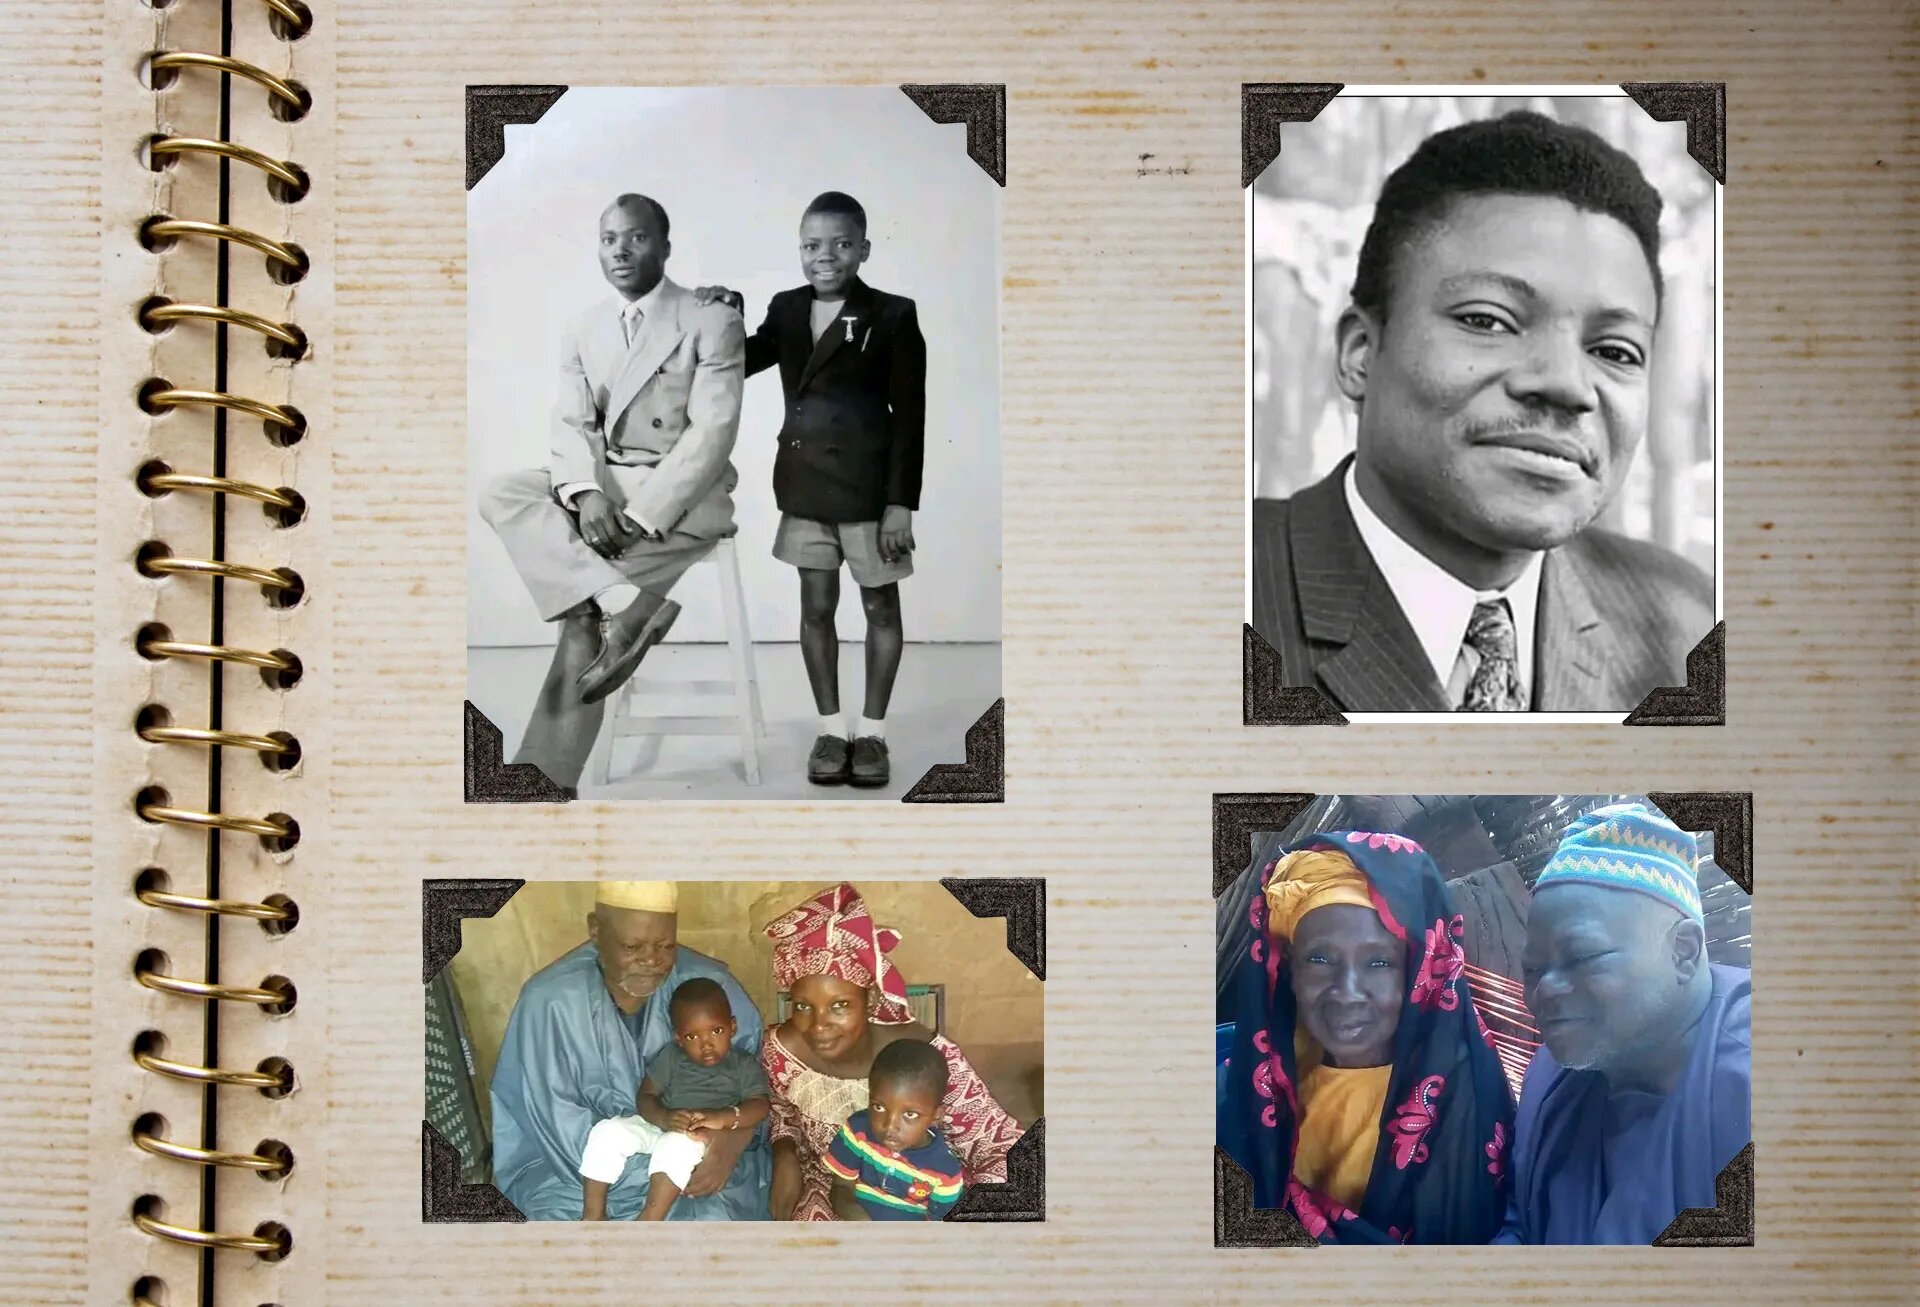 Bladzijde uit een familiefoto-album met Yambo Ouologuem als kind, schrijver en op latere leeftijd. Gedeeld met journalisten door zijn zoon Ambibé.